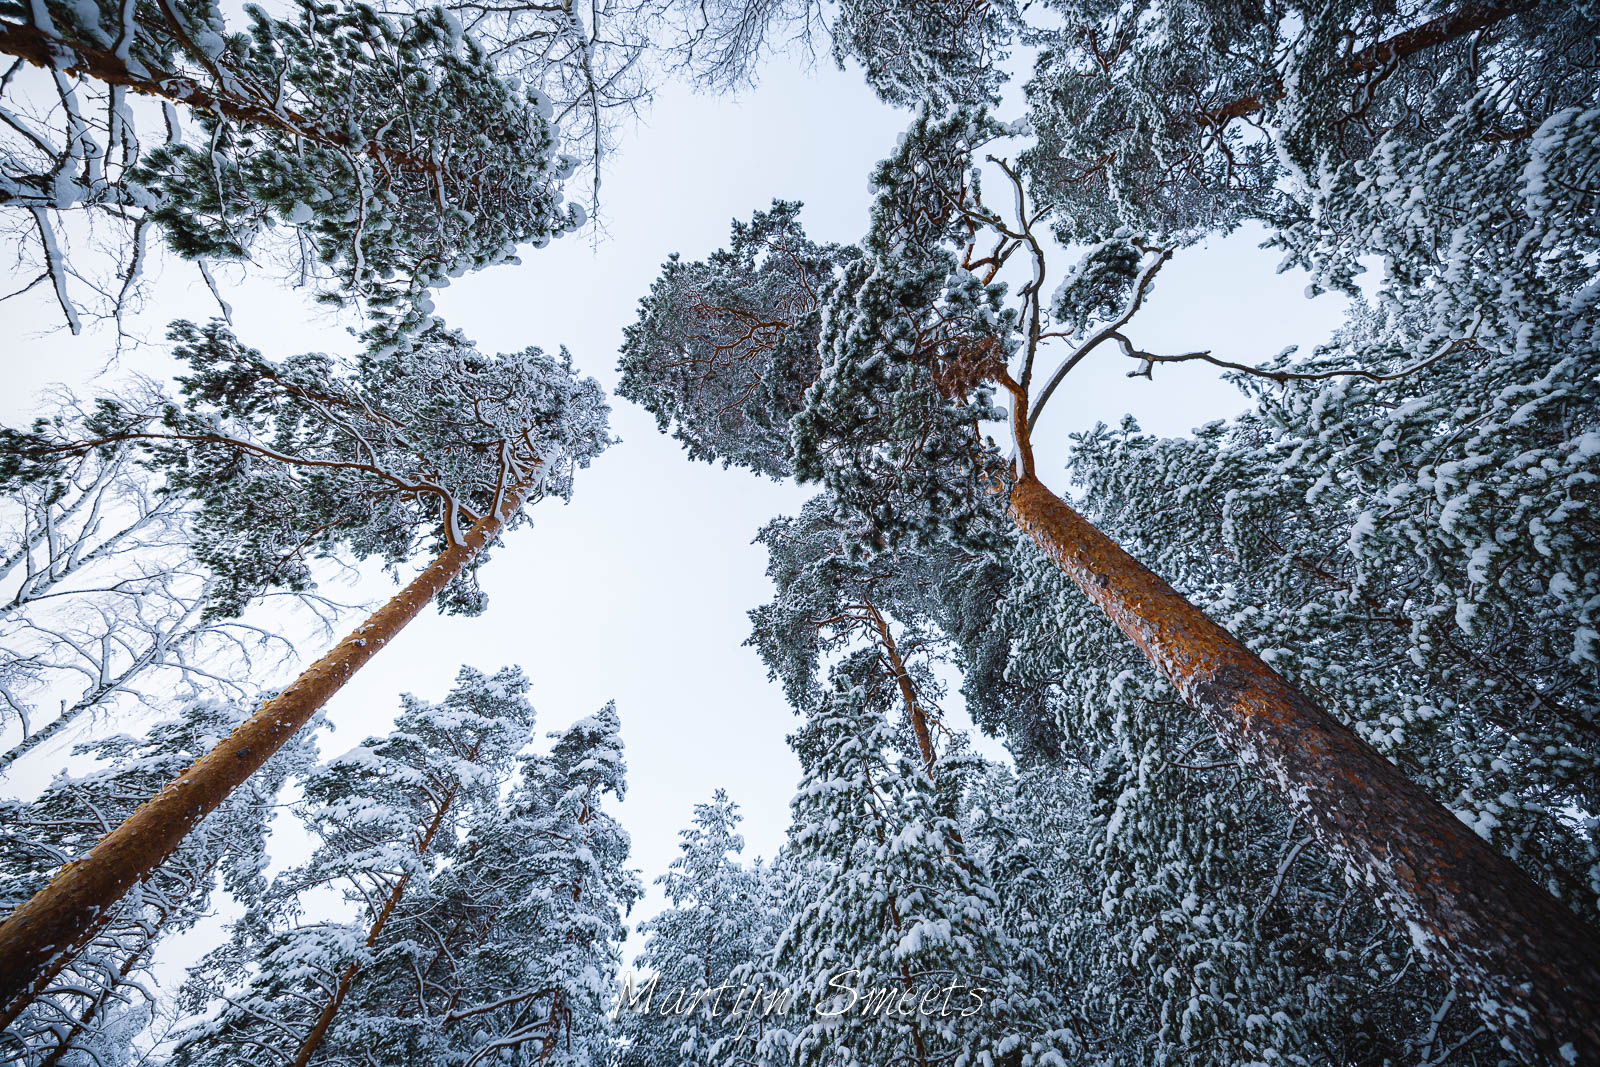 Pinetrees at Punkaharju, Finland